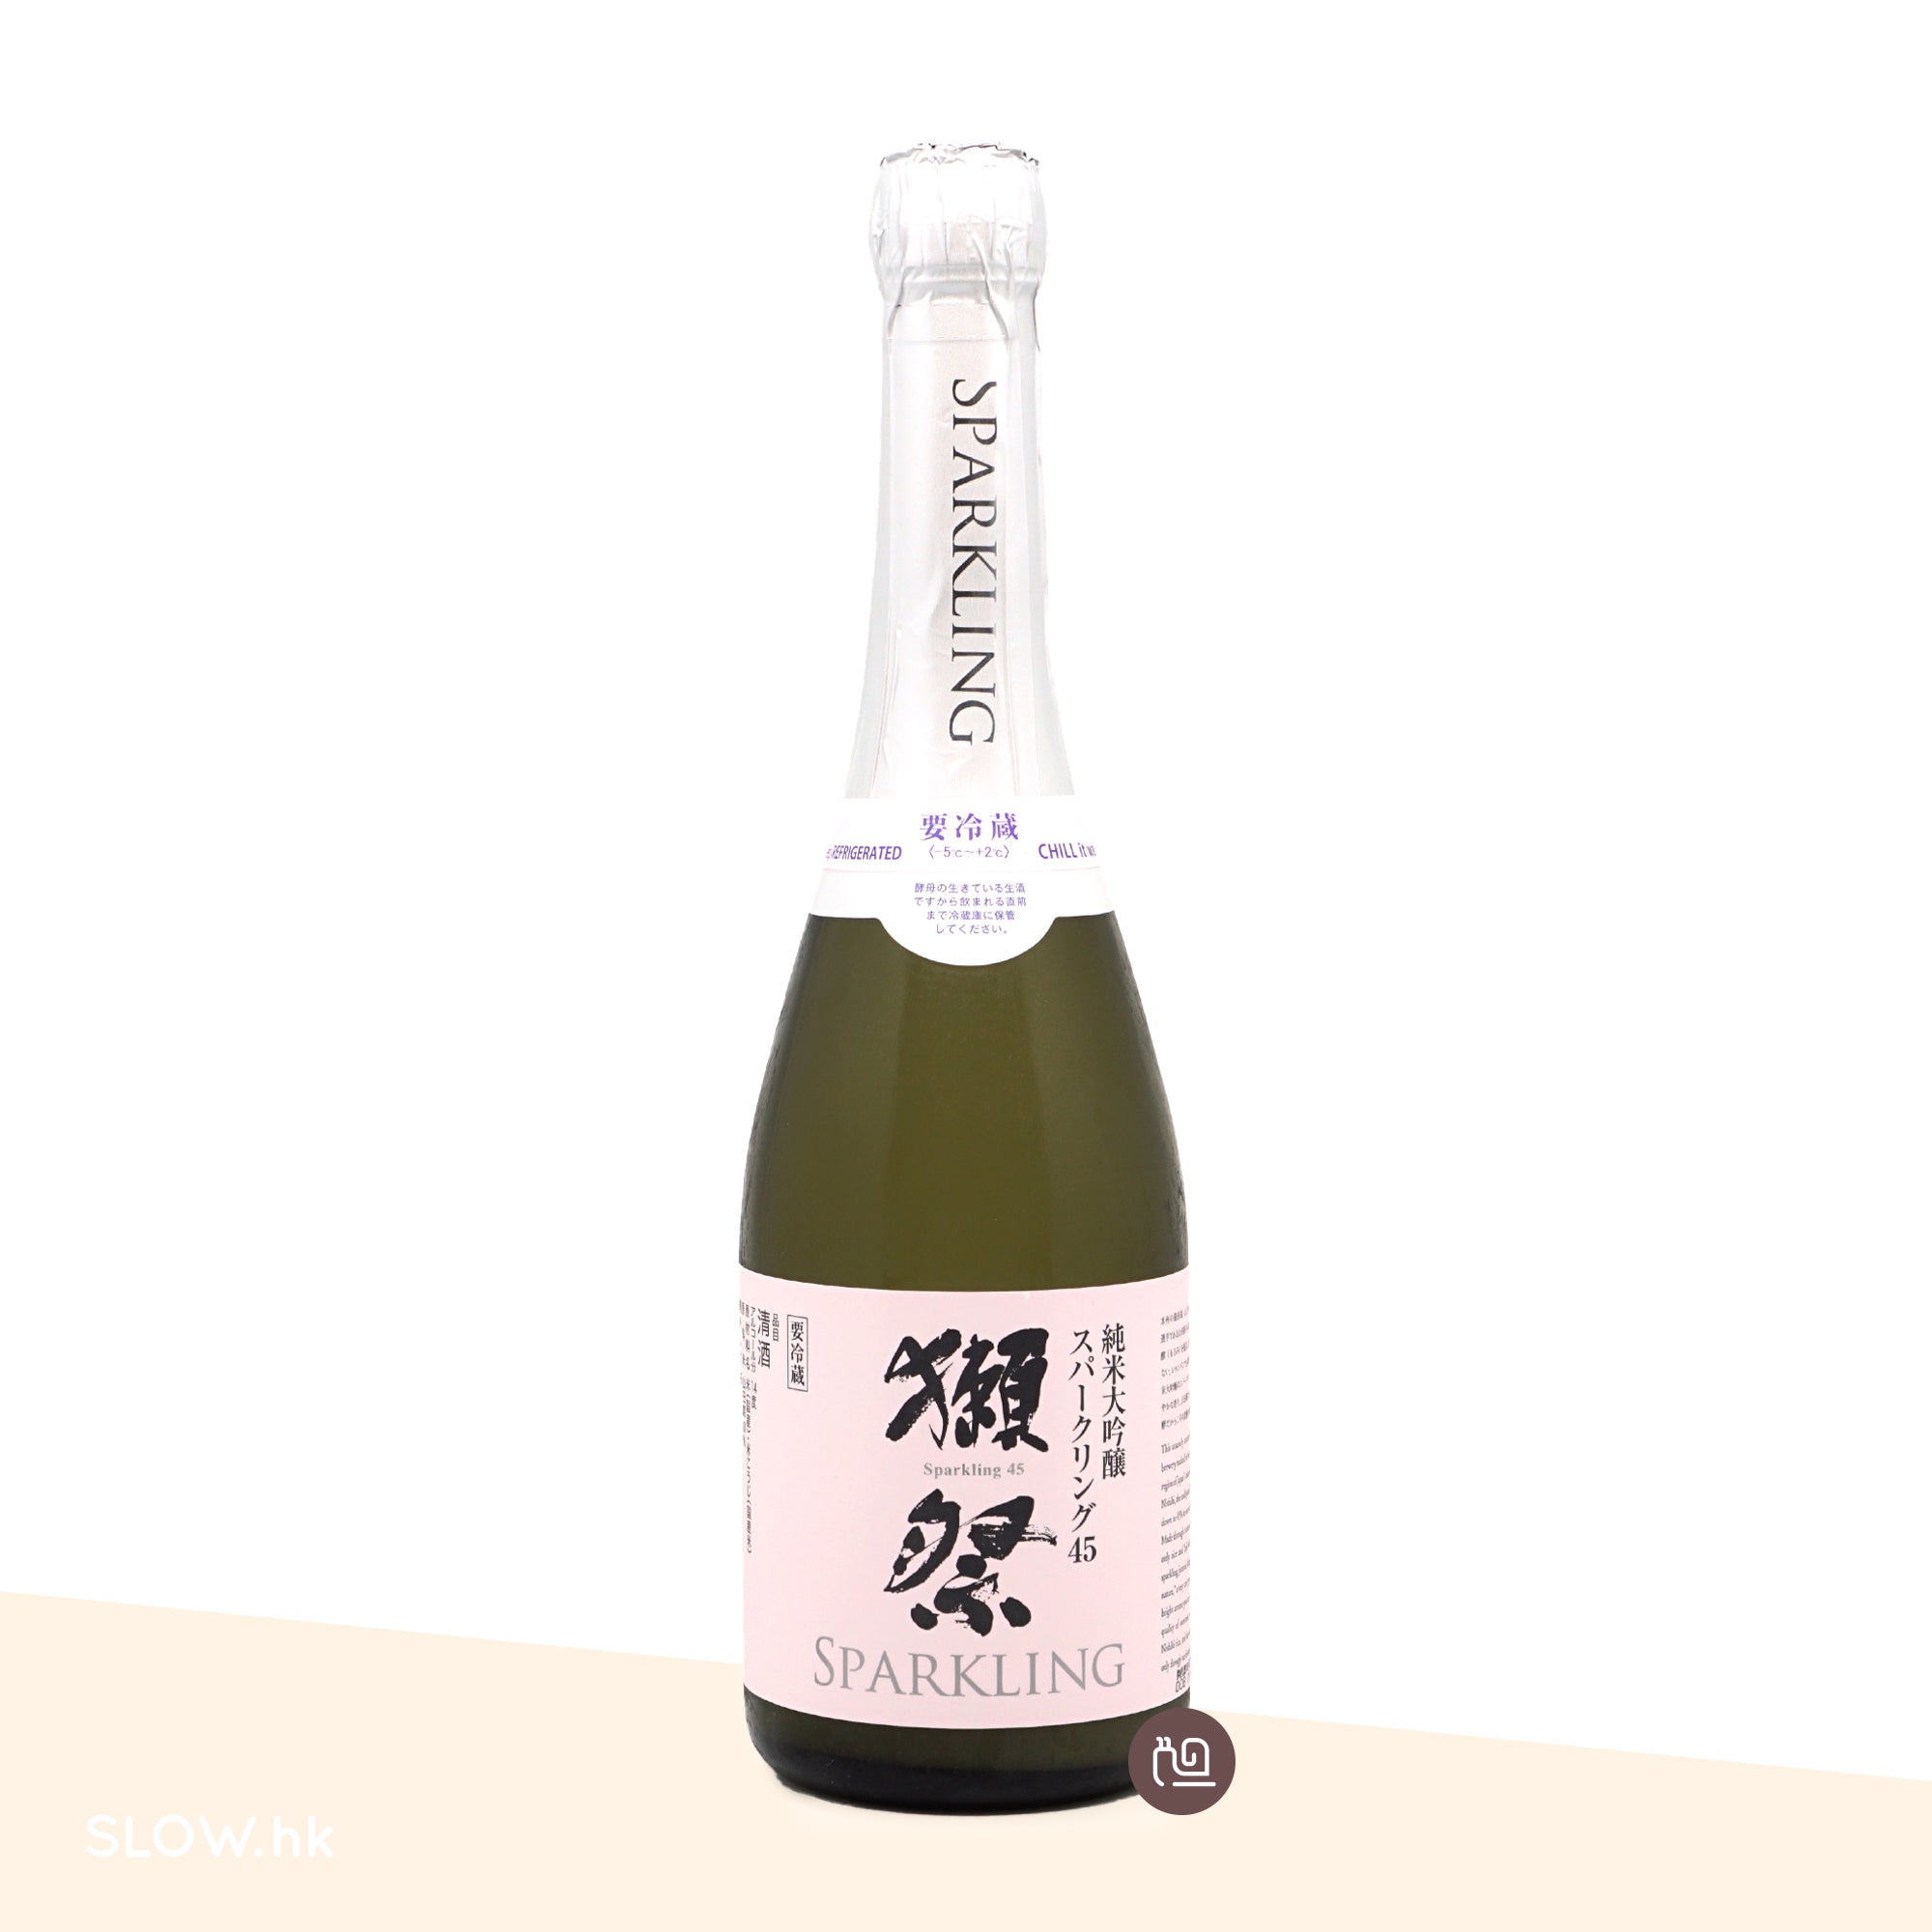 獺祭純米大吟釀氣泡濁酒(Sparkling) 45 720mL – SLOW.hk